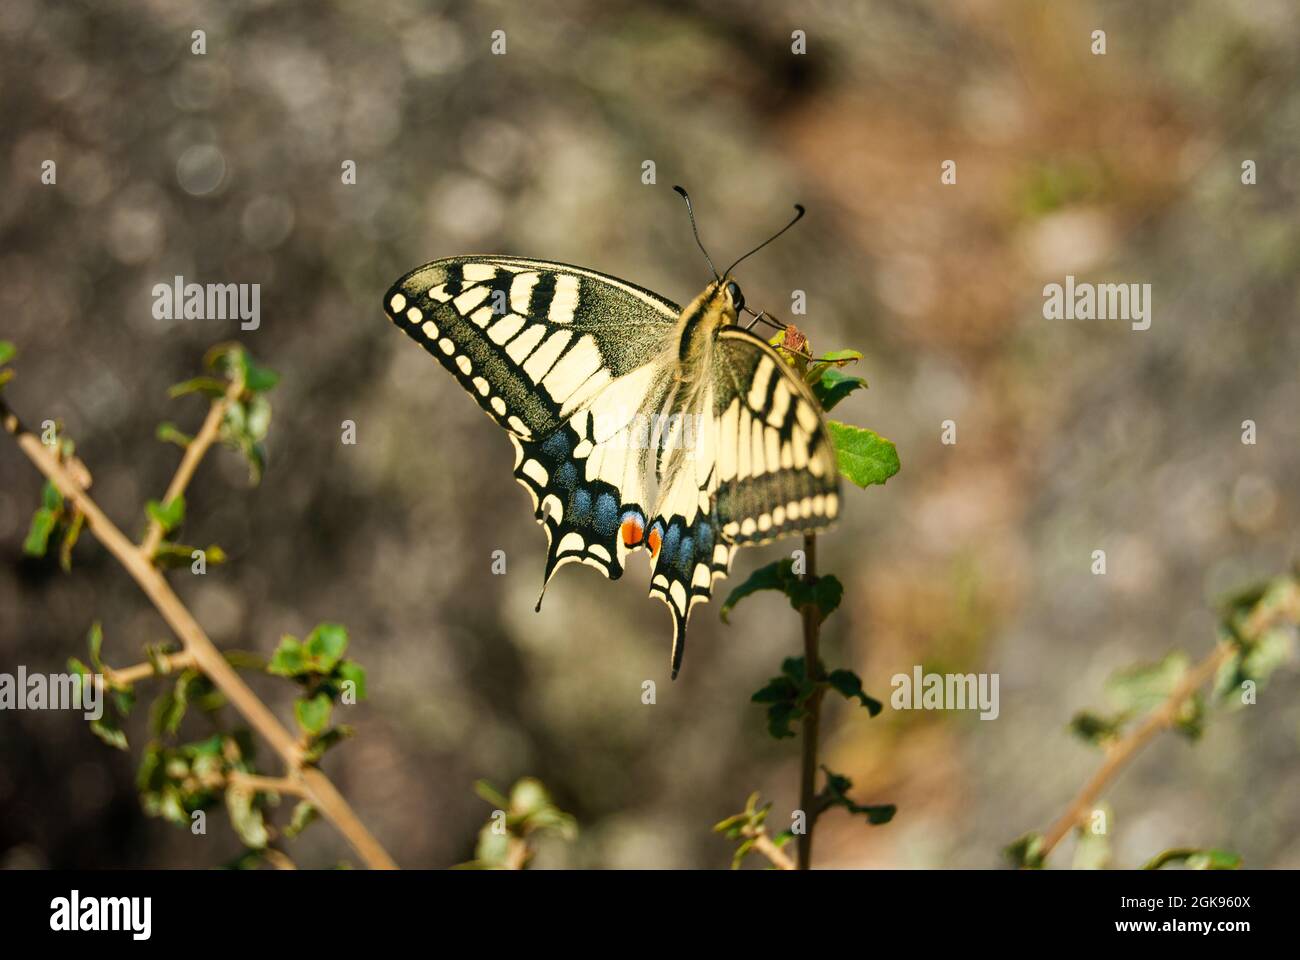 Schwalbenschwanzschmetterling auf einer Pflanze zwischen Steinen - Papilio machaon, der Schwalbenschwanz der Alten Welt Stockfoto